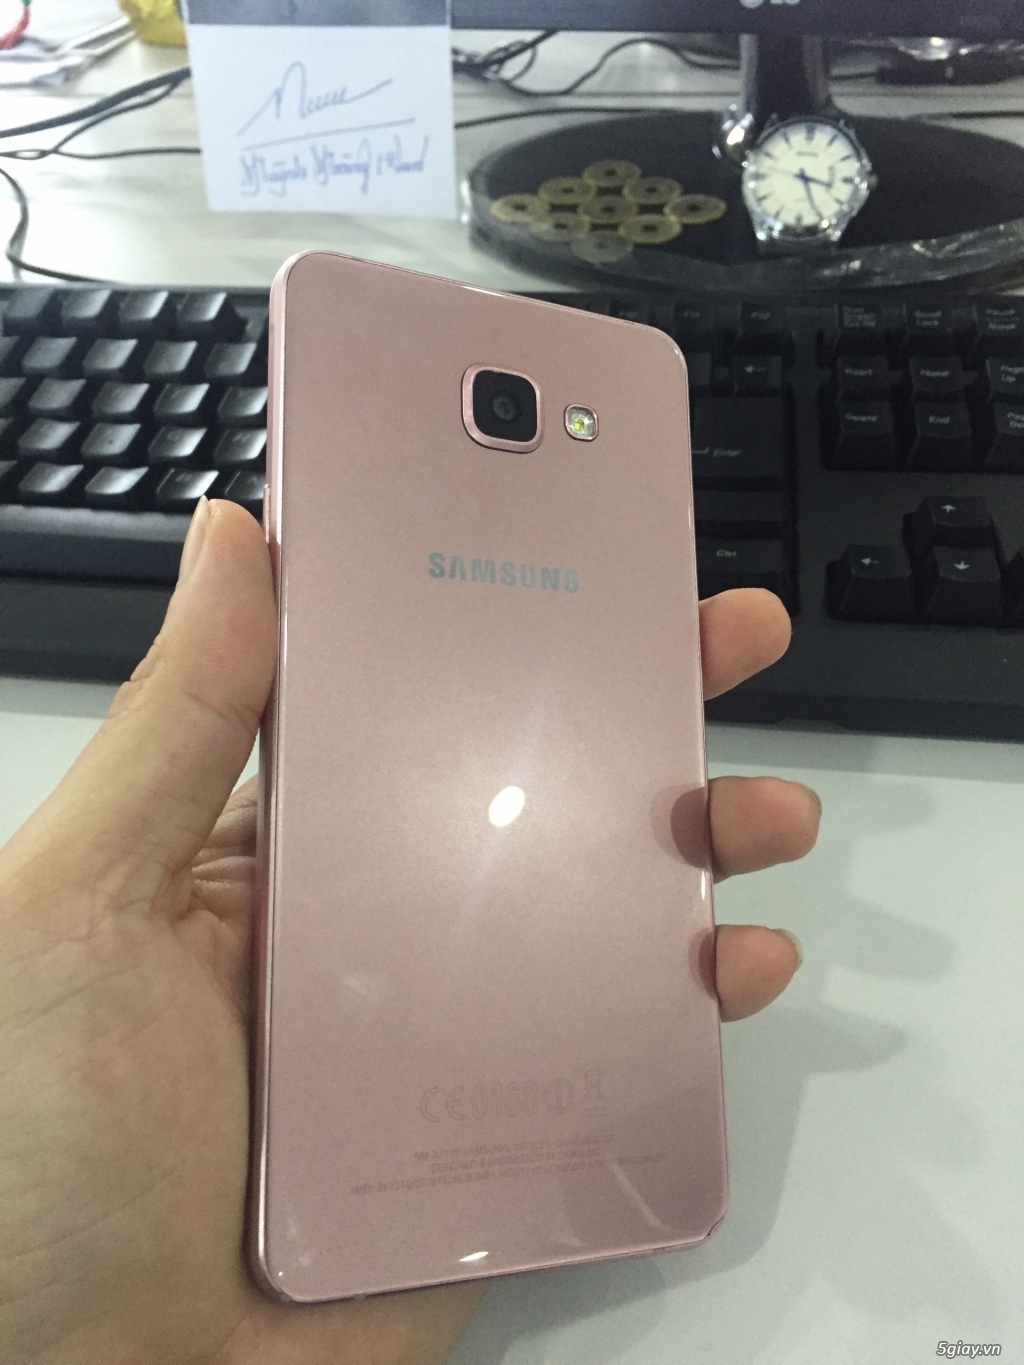 Samsung A7 2016 Rose Gold. 3 tr 8 ra đi nhanh chóng - 2